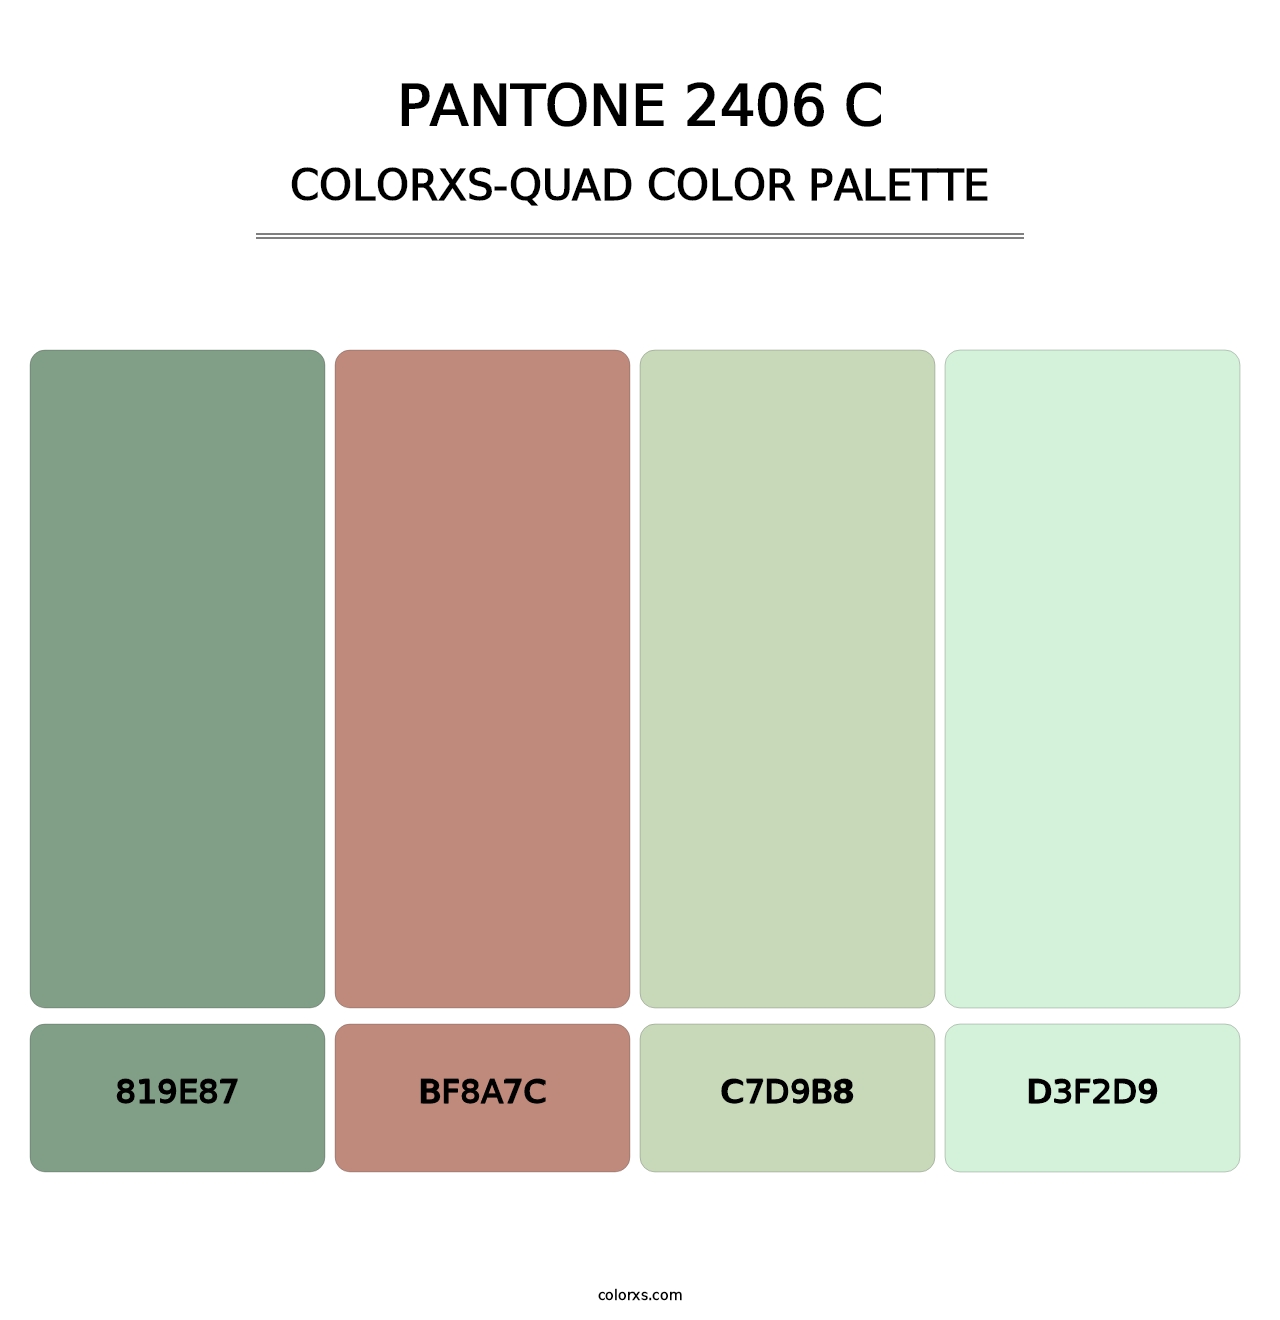 PANTONE 2406 C - Colorxs Quad Palette